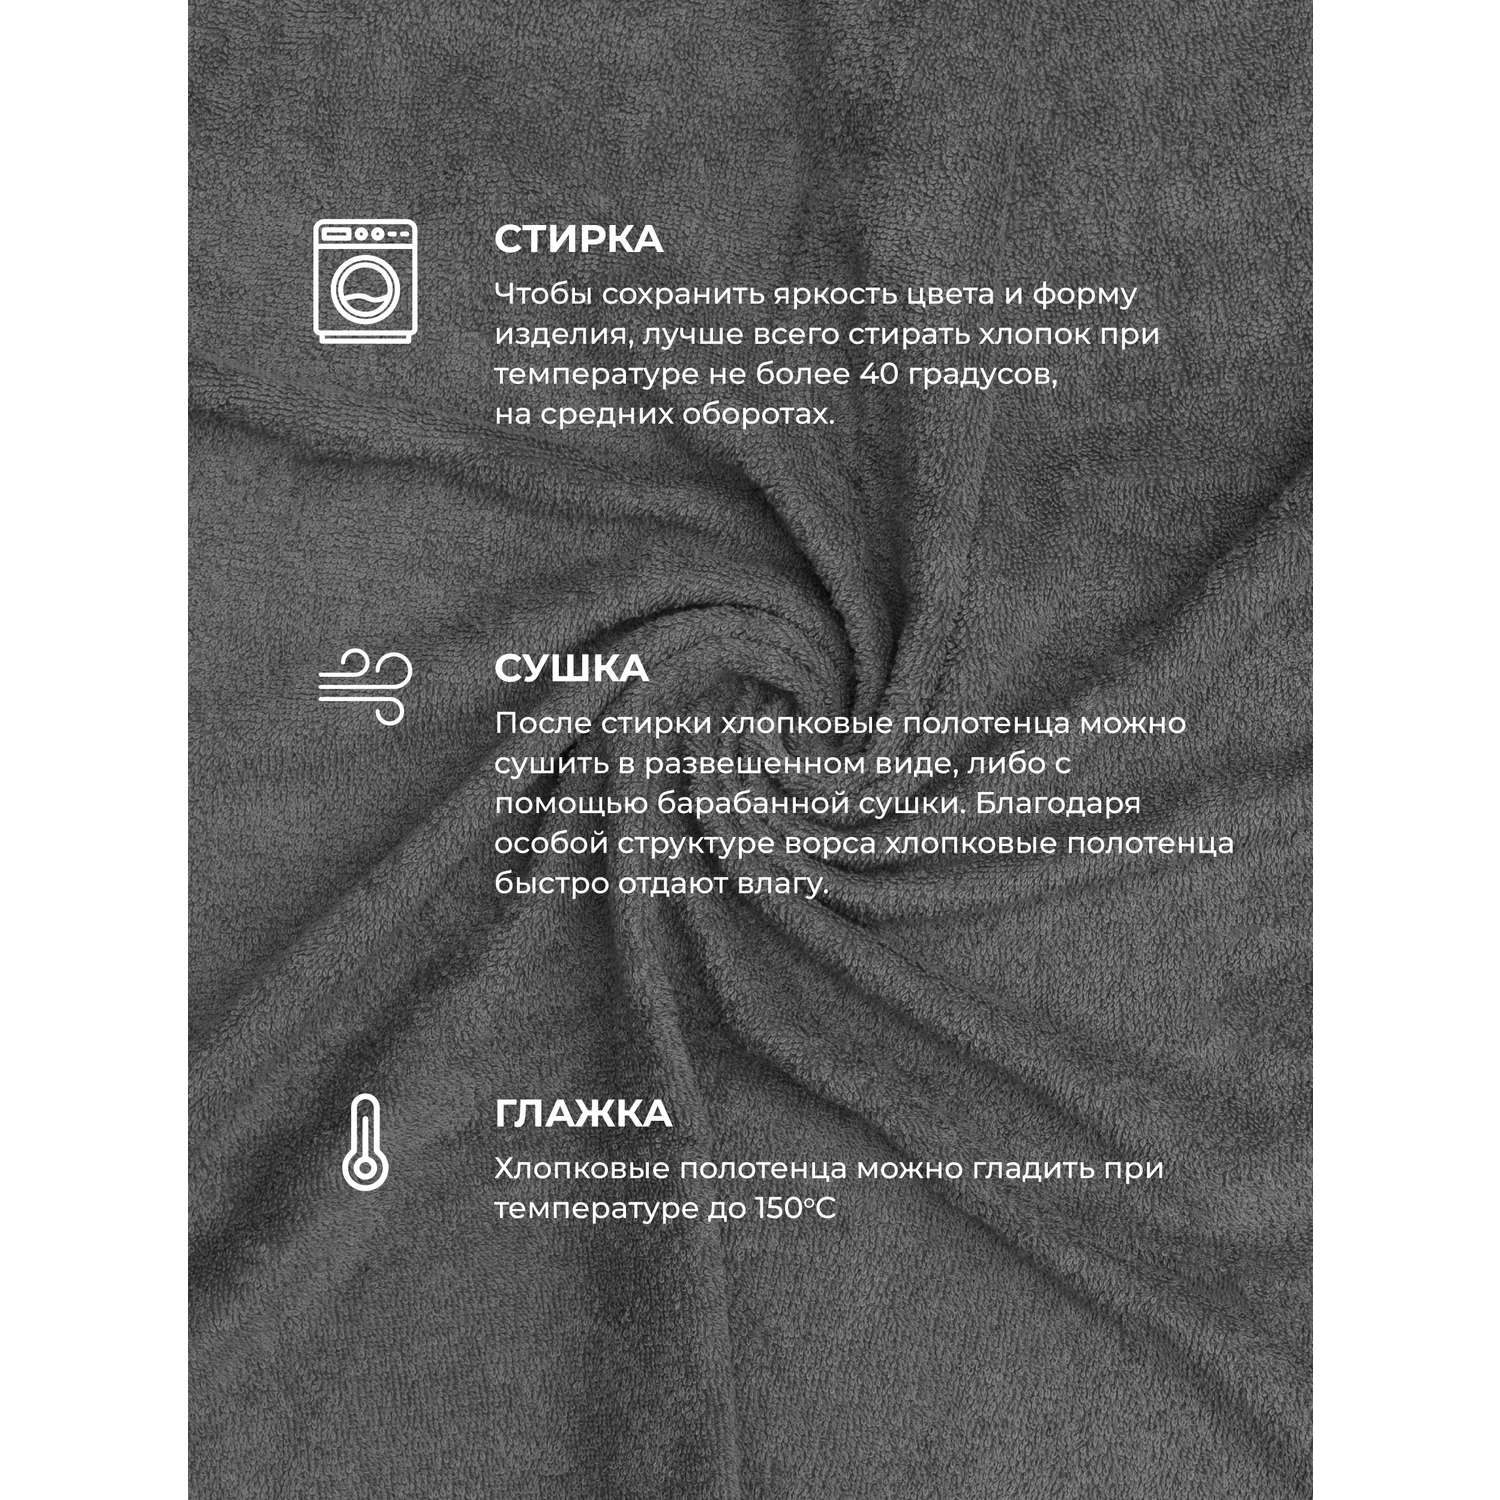 Набор махровых полотенец Unifico Nature серый агат набор из 6 шт.: 30х60-2и 50х80-2и70х130-2 - фото 13